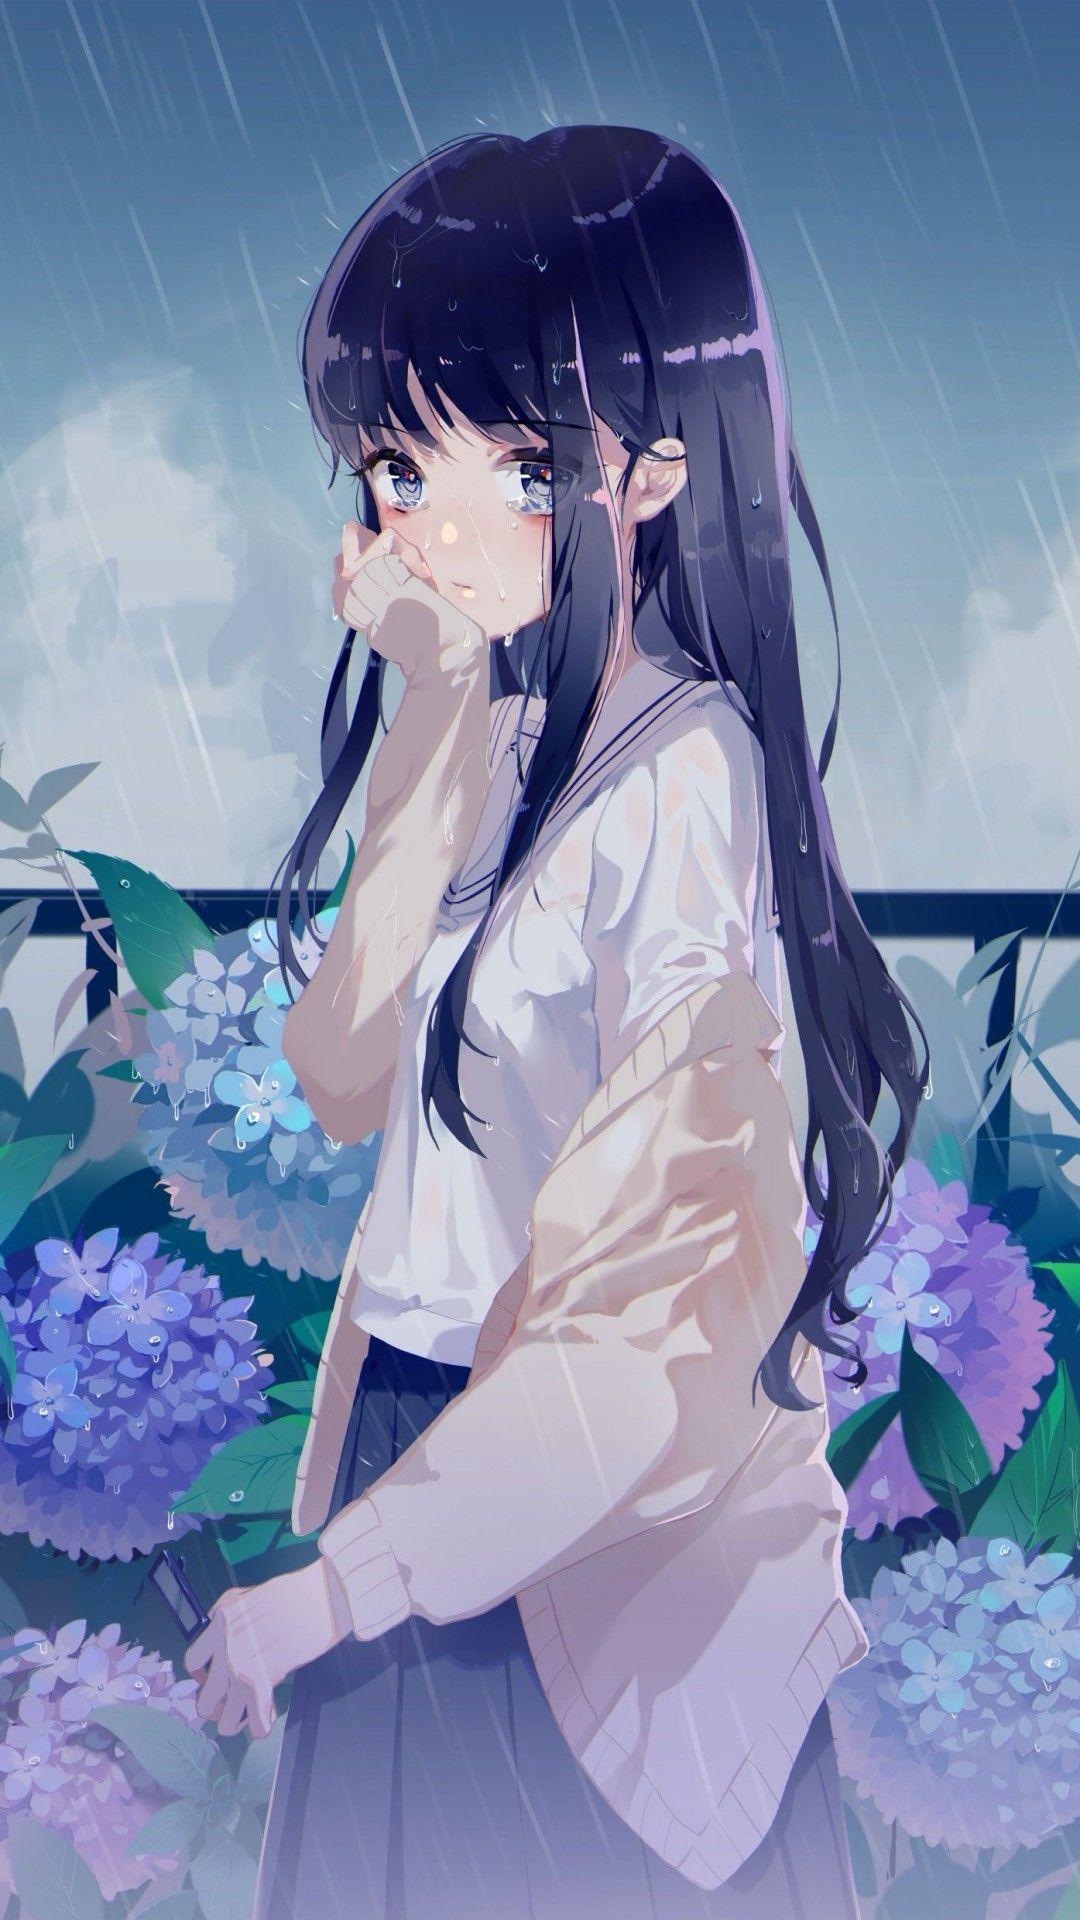 Crying Anime Girl Wallpaper Free Crying Anime Girl